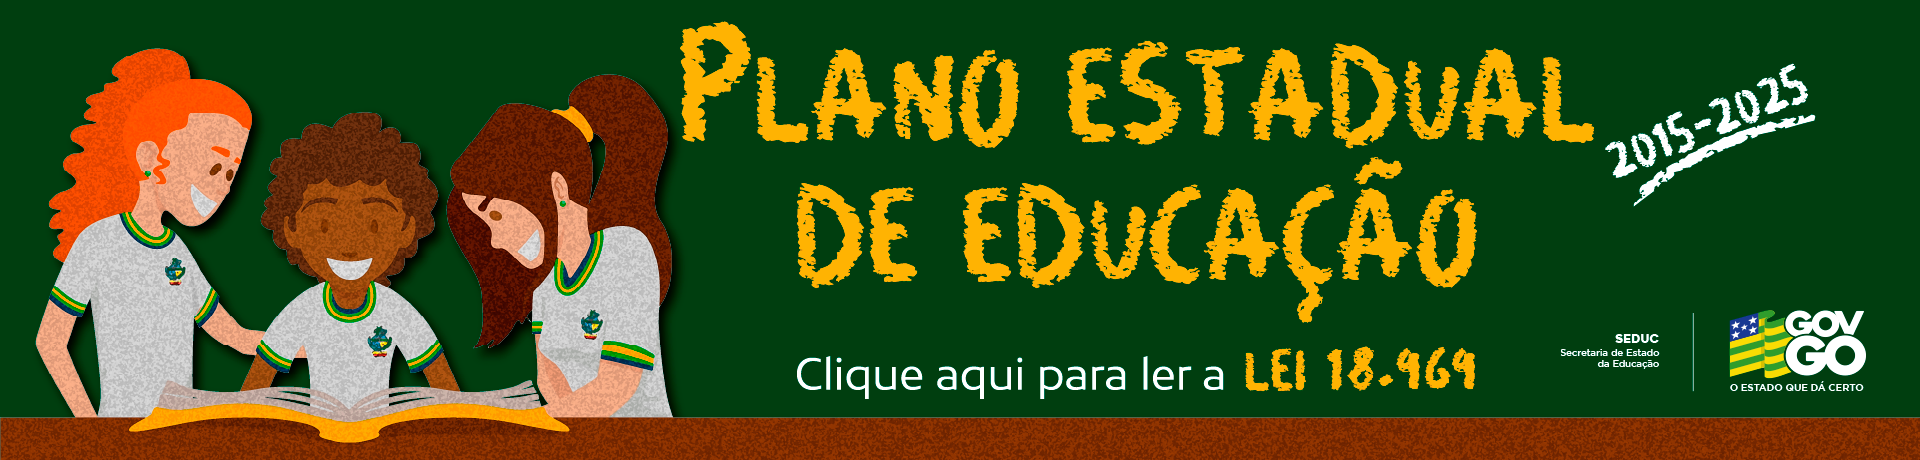 Banner Plano Estadual de Educação